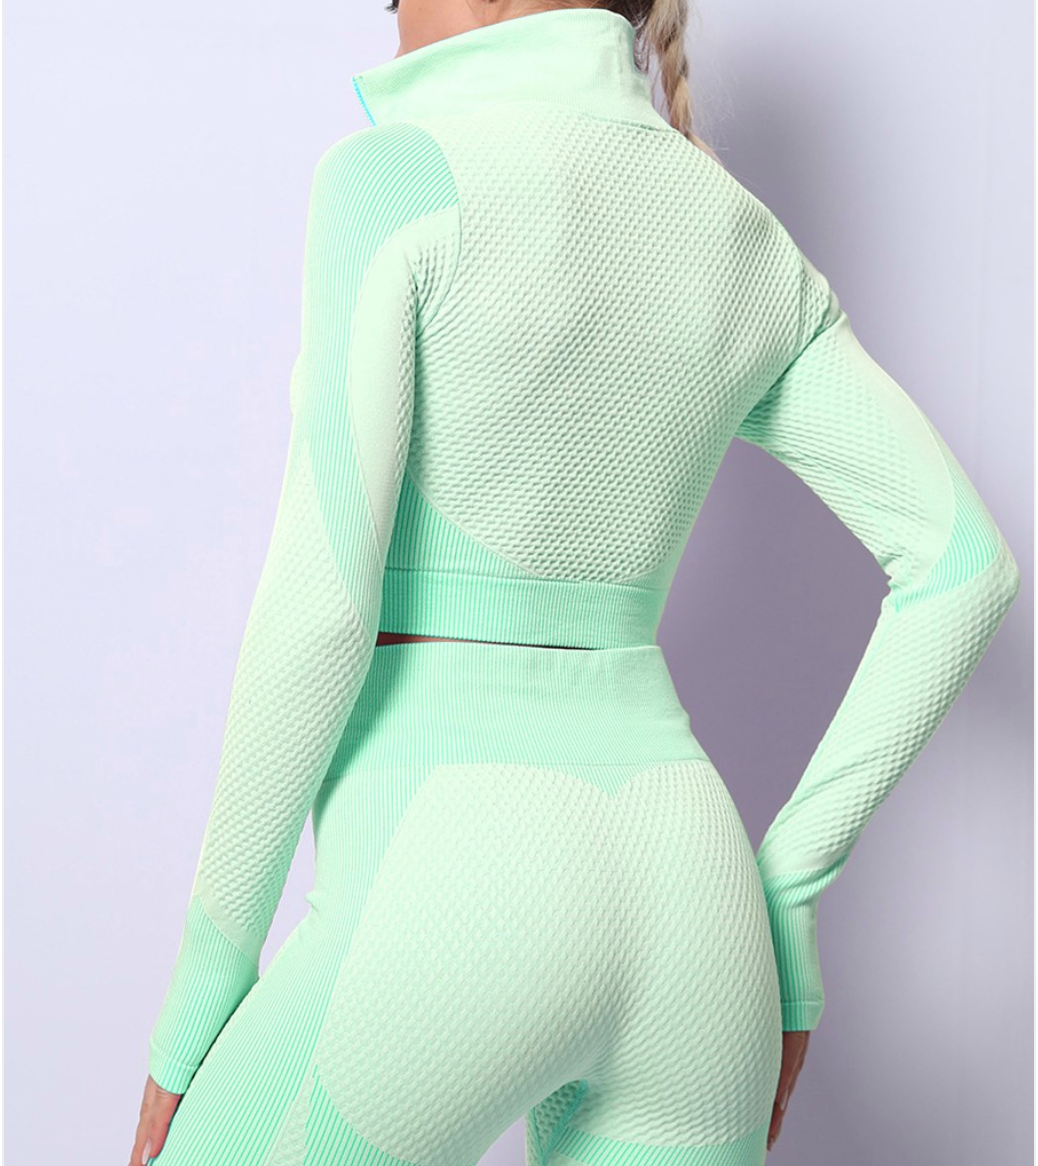 3 PIECE Grass Green Long Sleeves Zipper Sports Two-Piece Outfits Moisture Wicking WITH WAIST SNATCHER - Snatch Bans